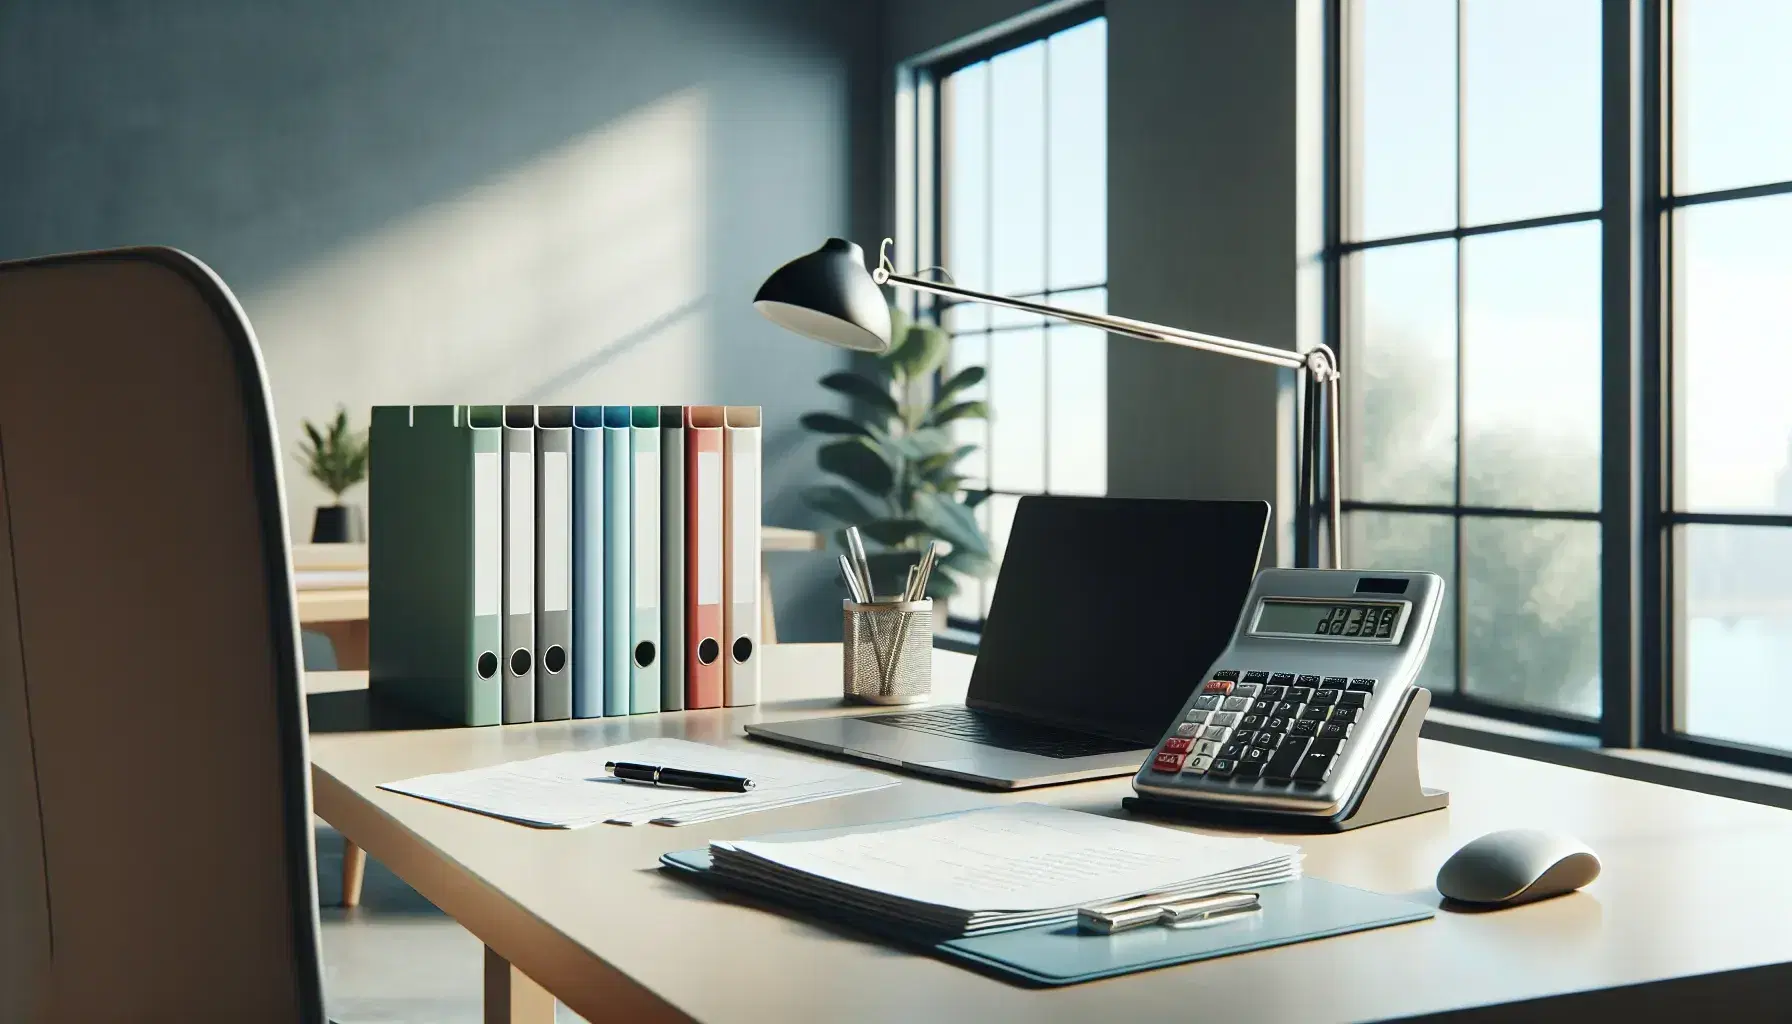 Oficina moderna y luminosa con escritorio amplio, calculadora gris, carpetas de colores, teléfono fijo negro, laptop plateado y planta verde junto a ventana con cielo despejado.